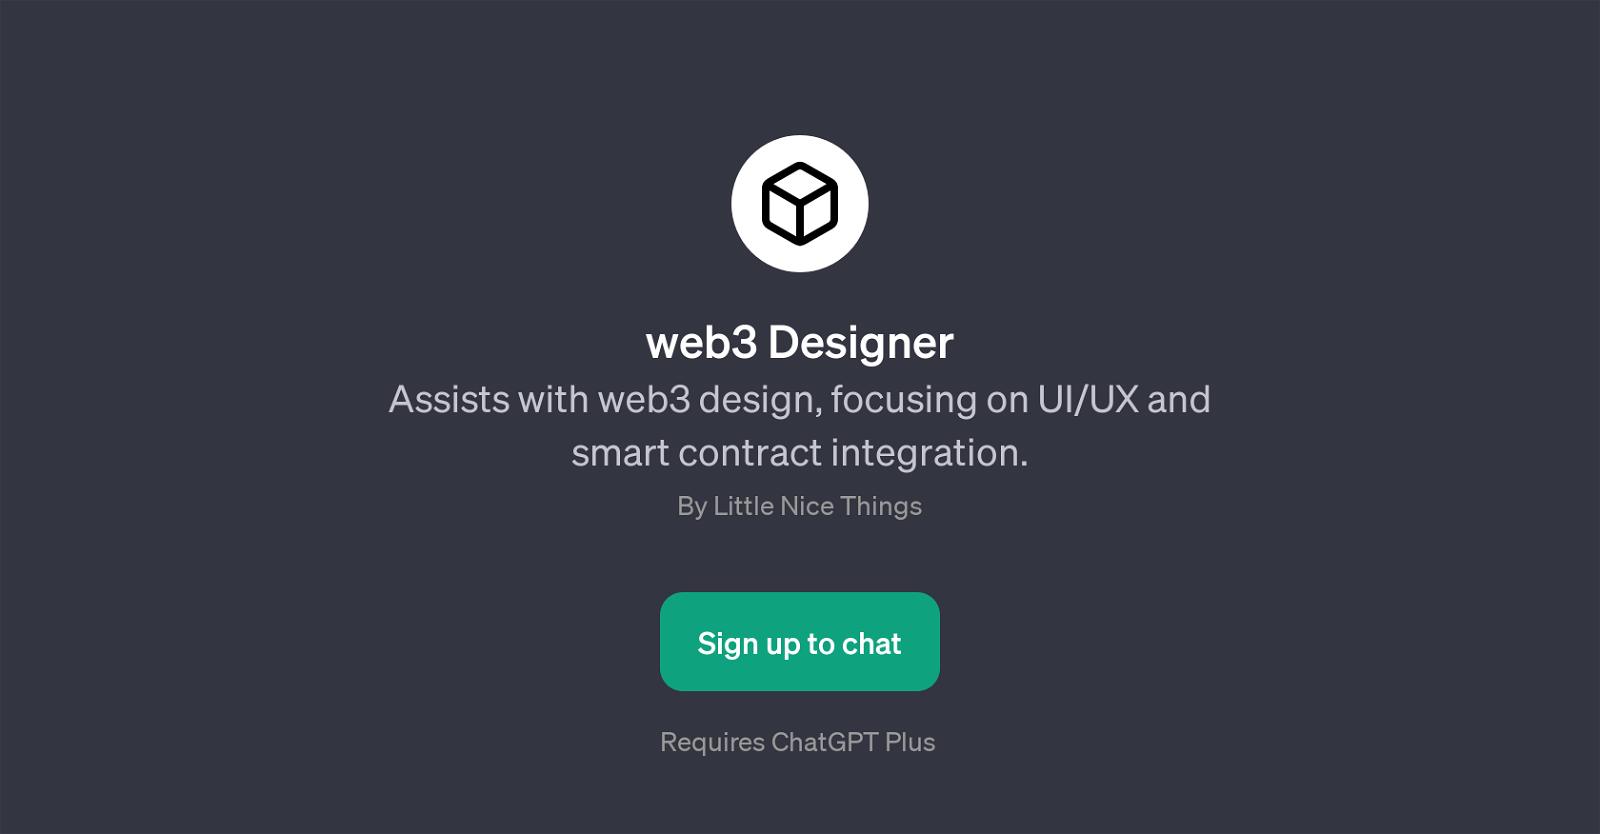 web3 Designer website